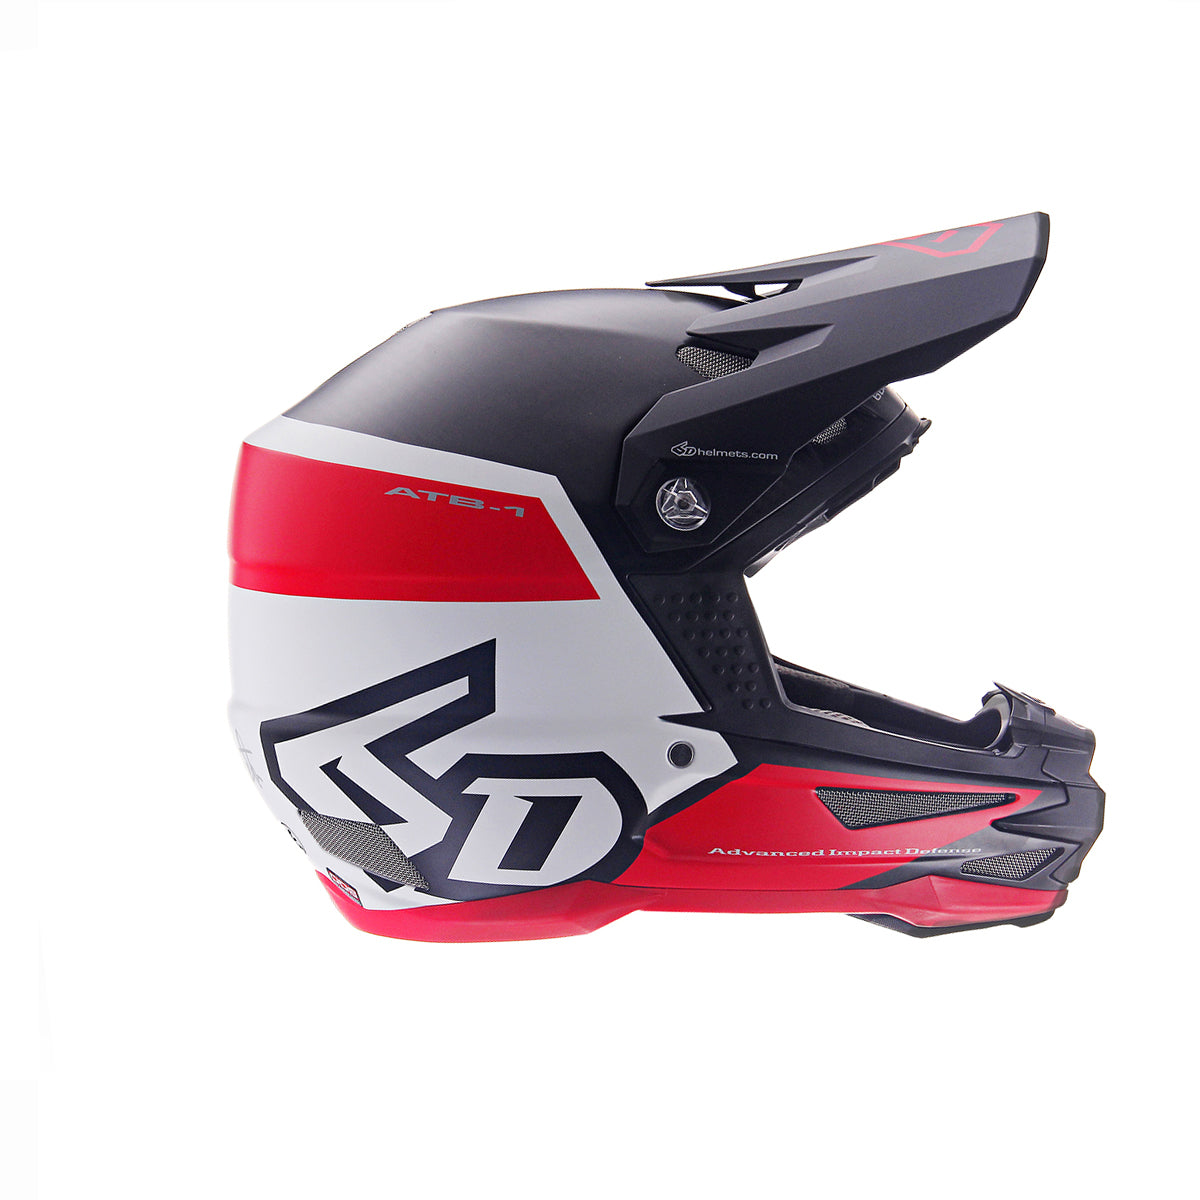 Bike – 6D Helmets